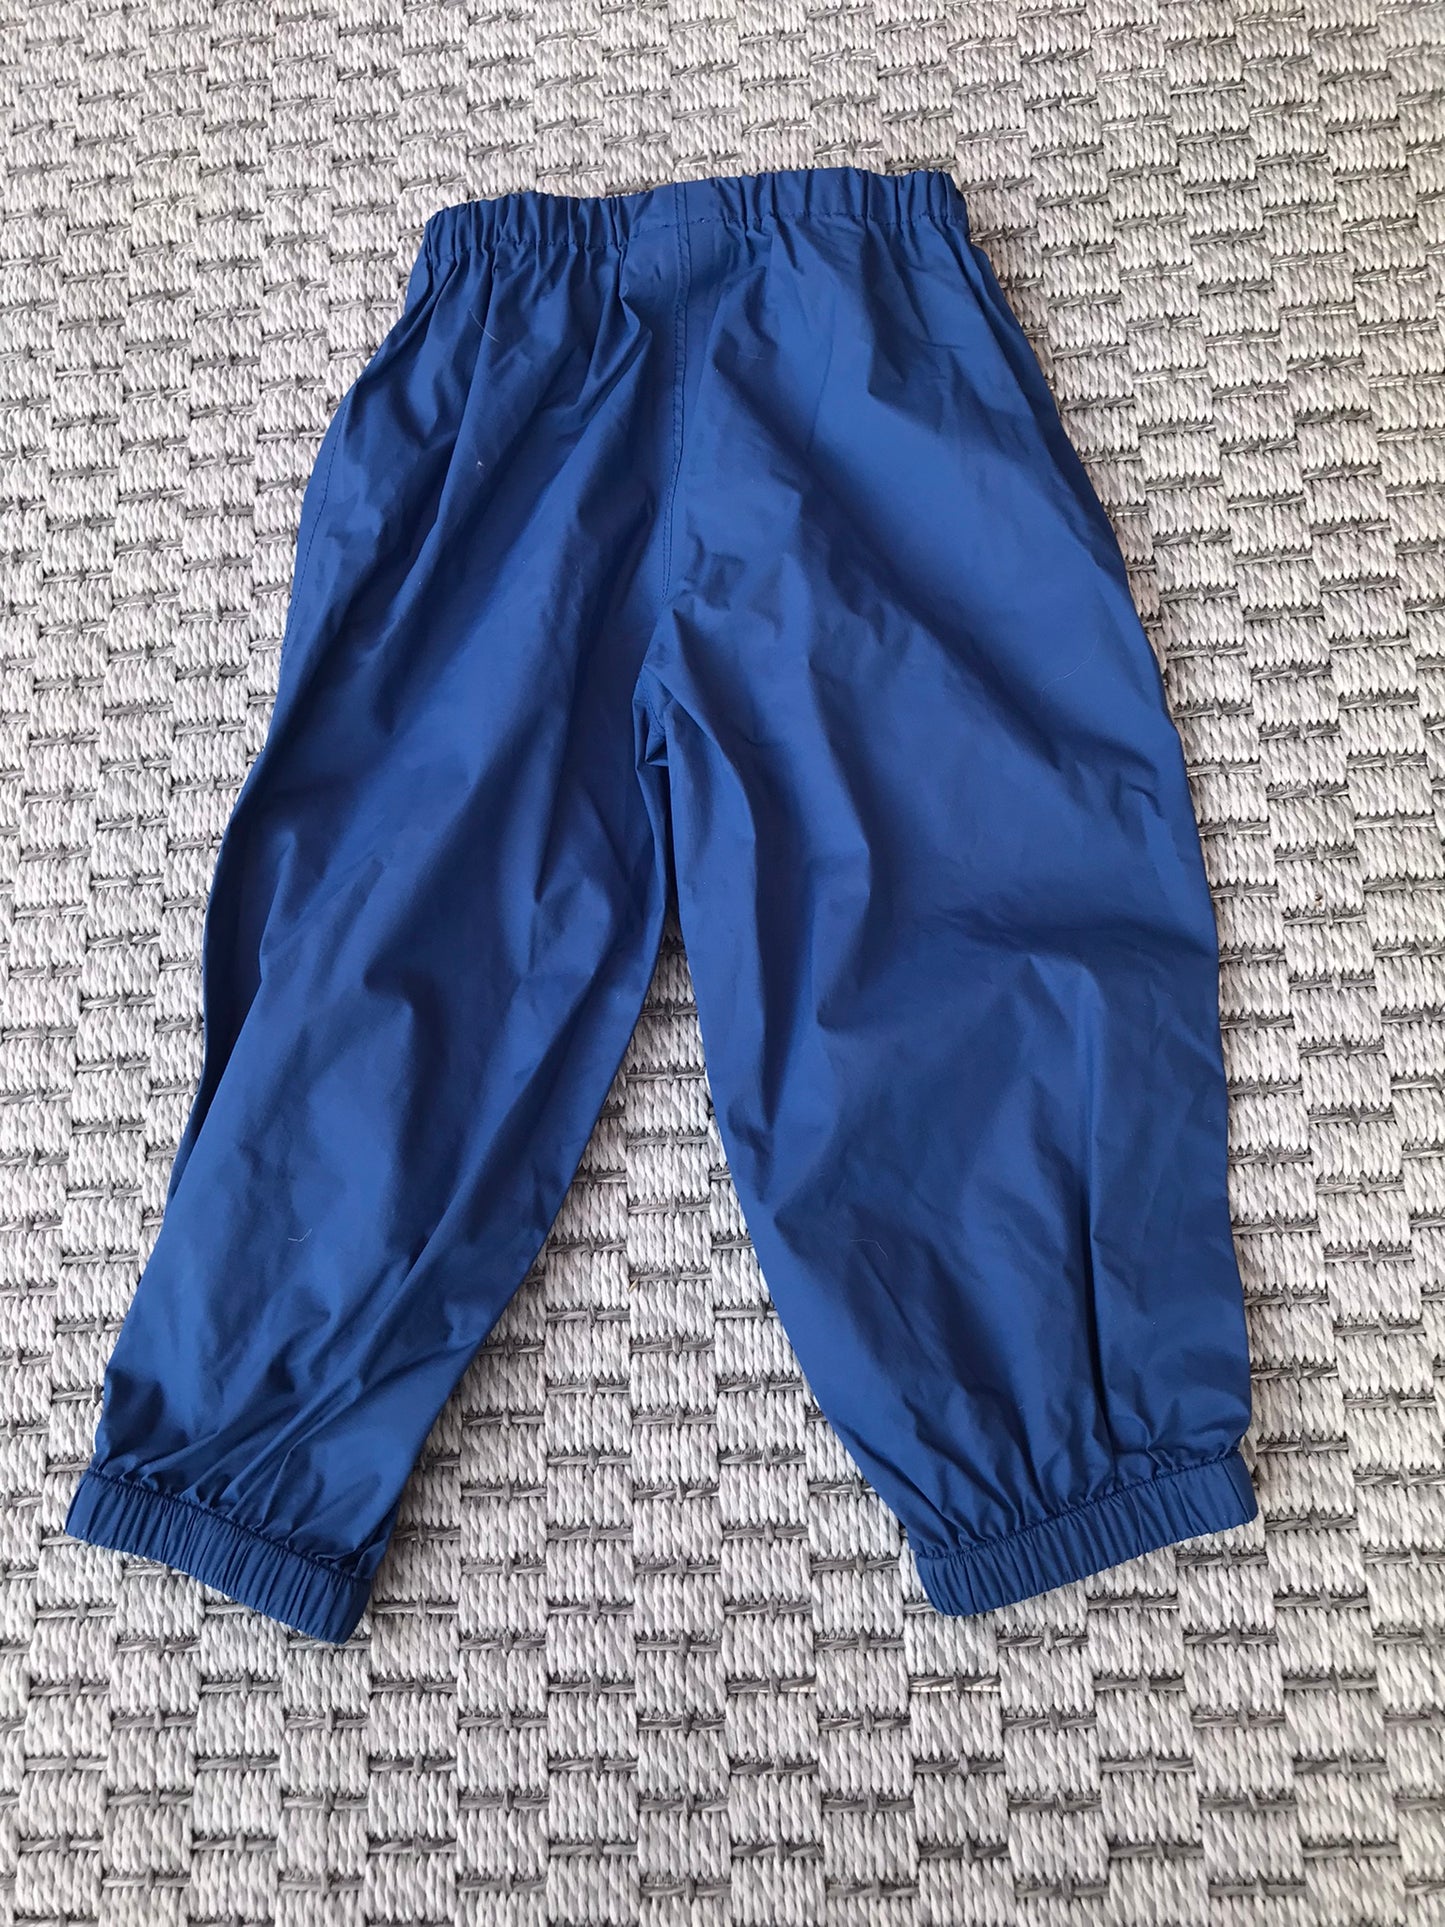 Rain Pants Child Size 18 month MEC Marine Blue Excellent